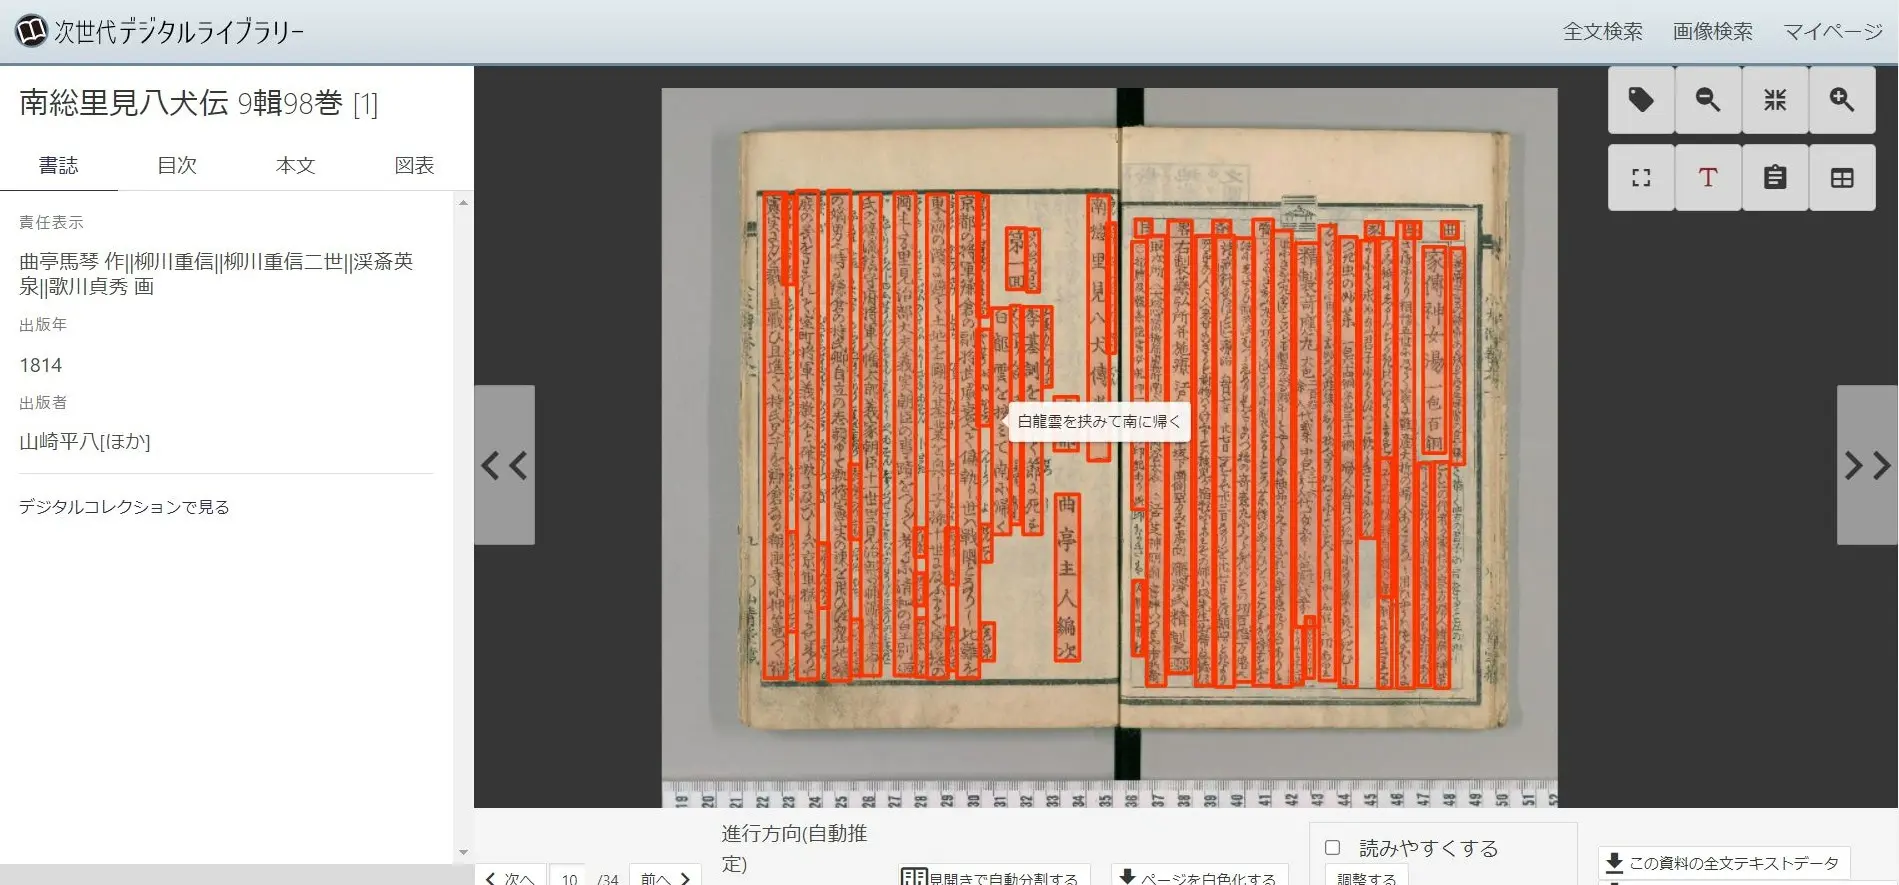 次世代デジタルライブラリーで、OCRテキストを表示する方法を説明しています。表示している画像の文章が赤く矩形に囲まれます。読みたい矩形にカーソルを合わせ、矩形内の文章のOCRテキストが表示されている画像です。